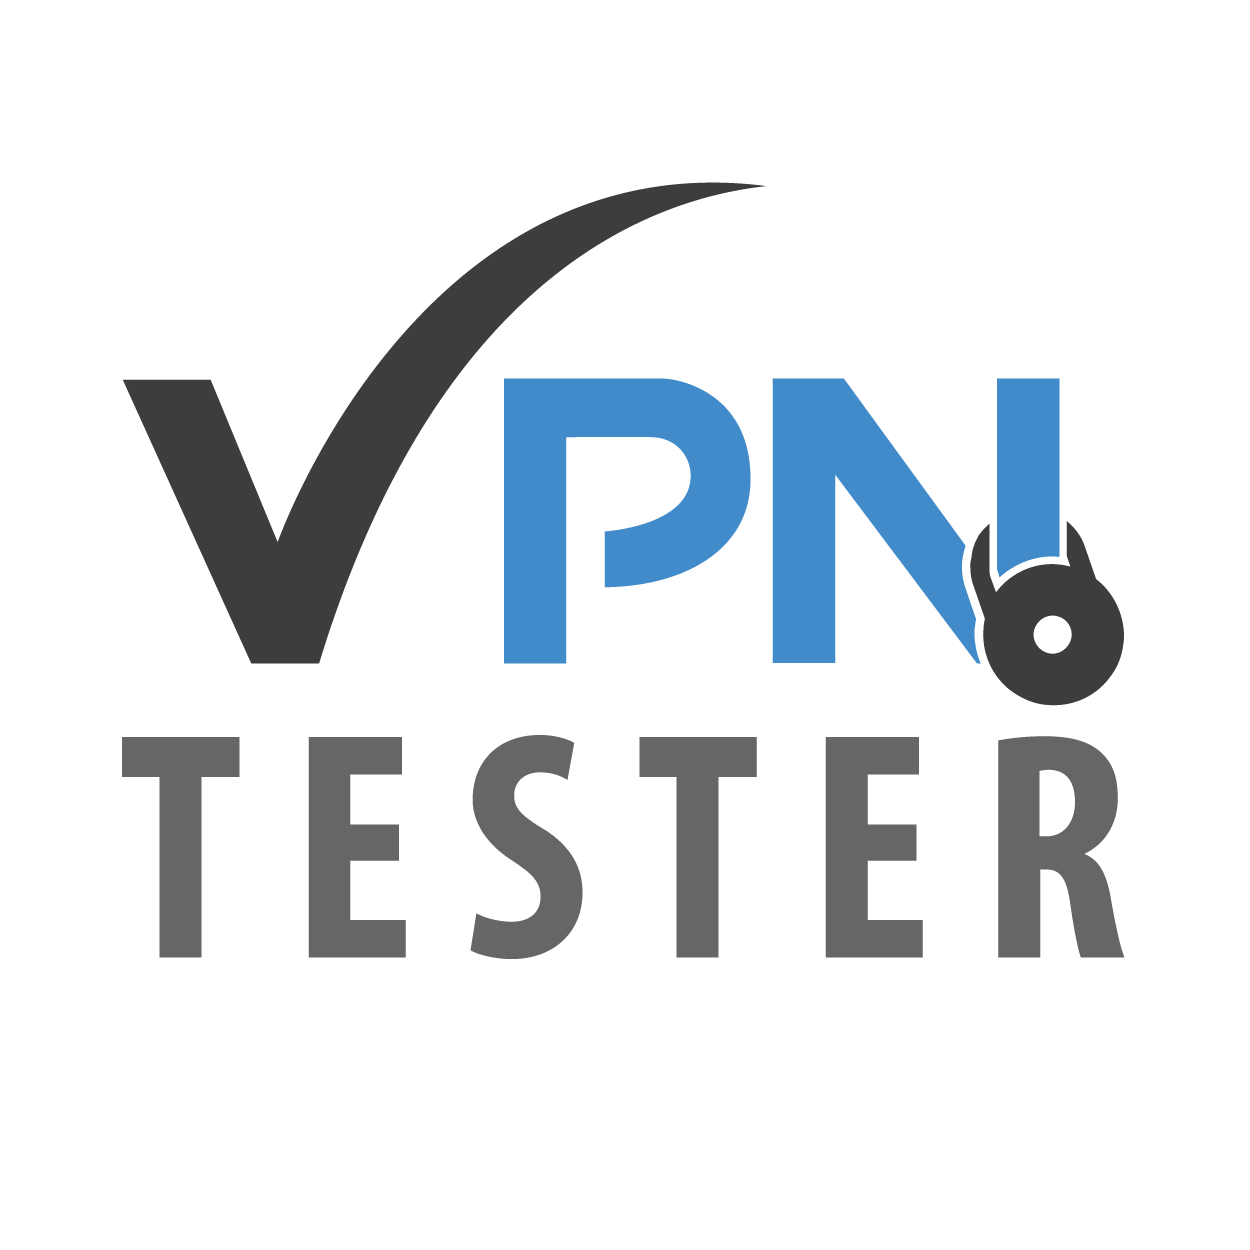 SpyOFF VPN Testbericht - Update 2019 1